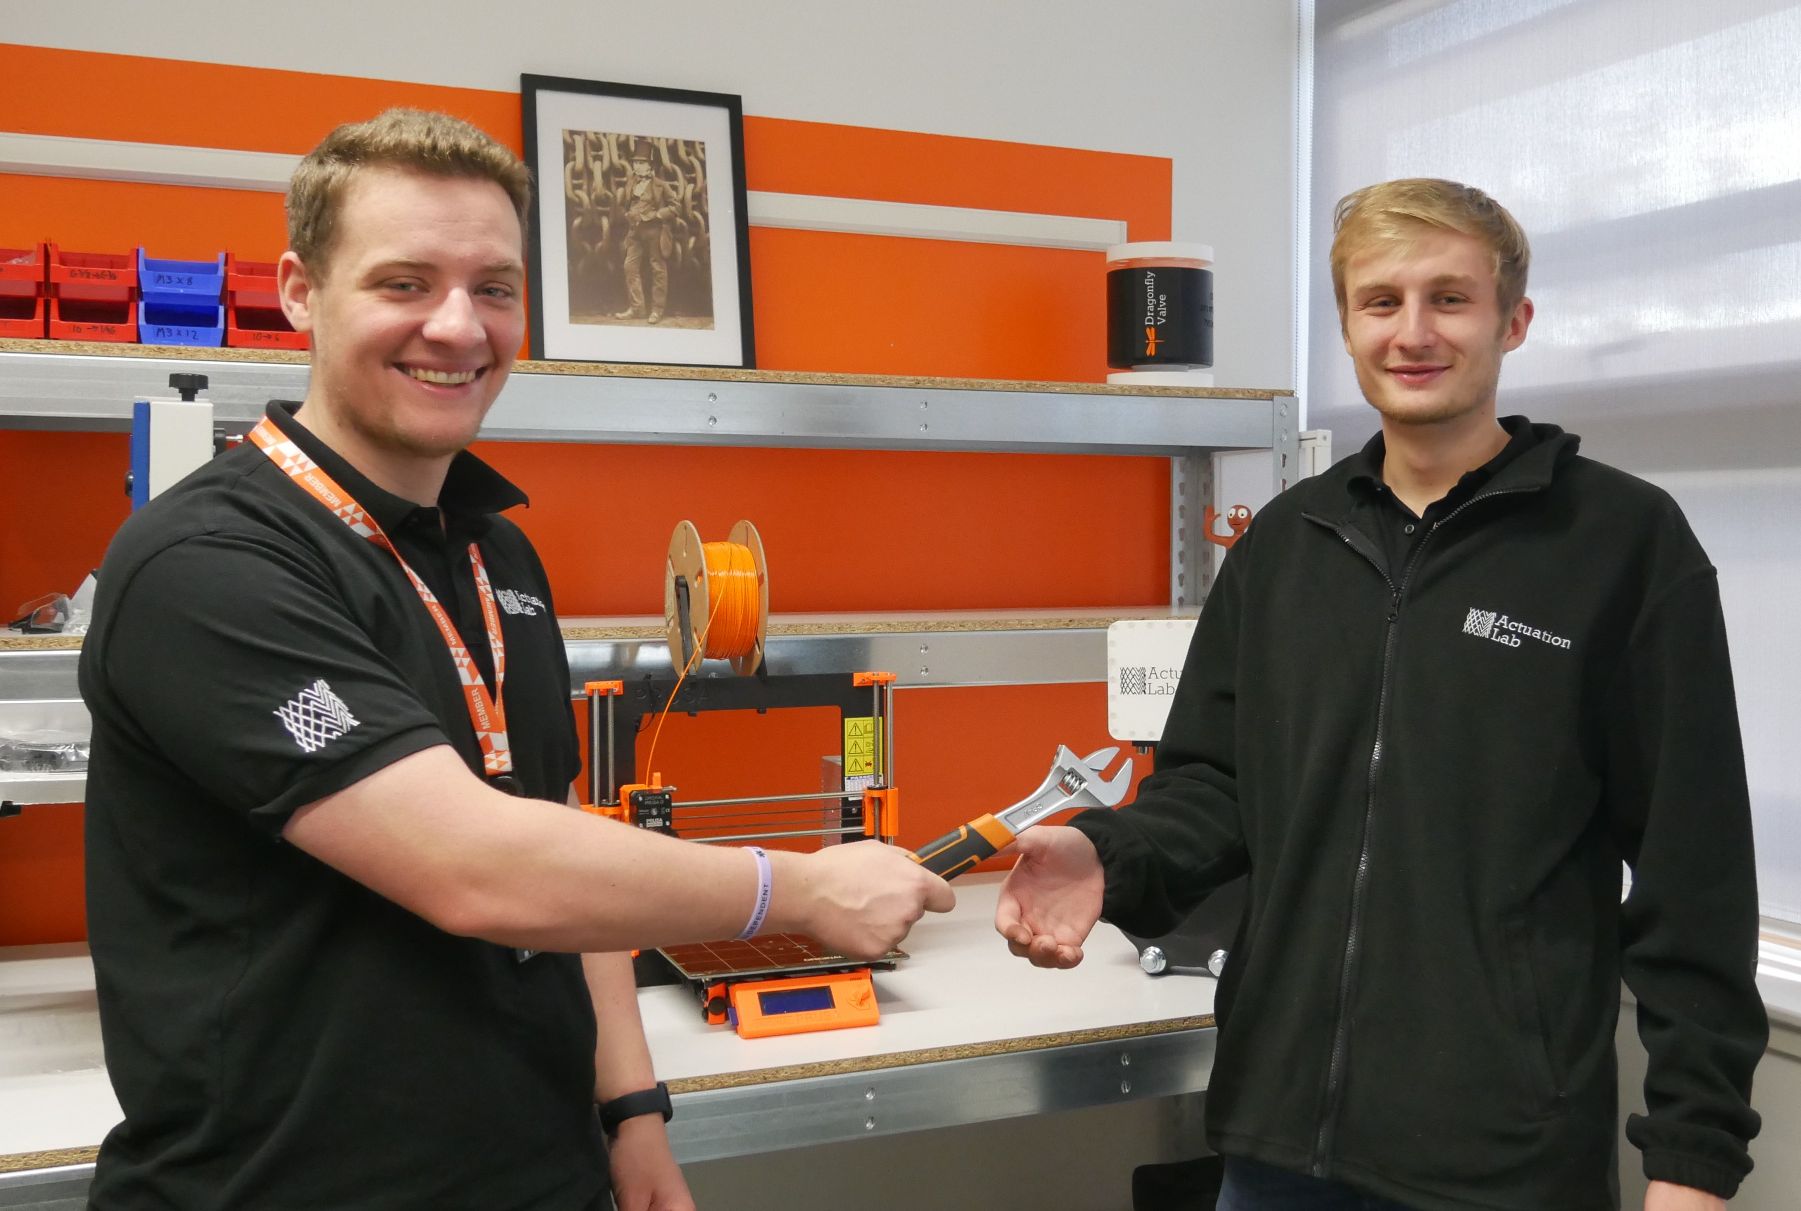 R&D Engineer Matt Hollis welcoming new recruit James Irvin by handing him an adjustable spanner